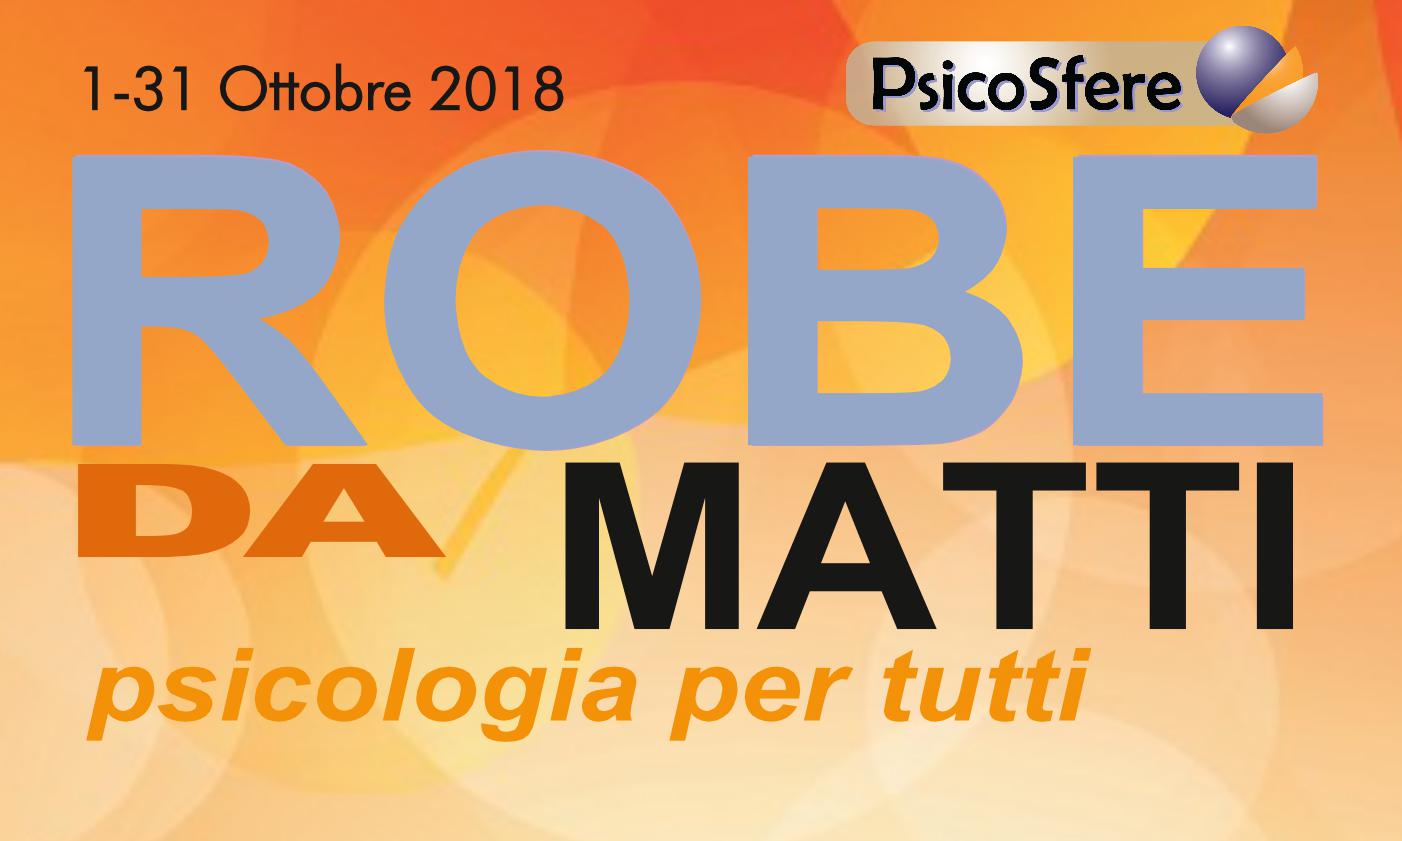 Robe da Matti Psicologia per tutti a Bologna. Tanti seminari gratuiti Evento organizzato dall'associazione Psicosfere